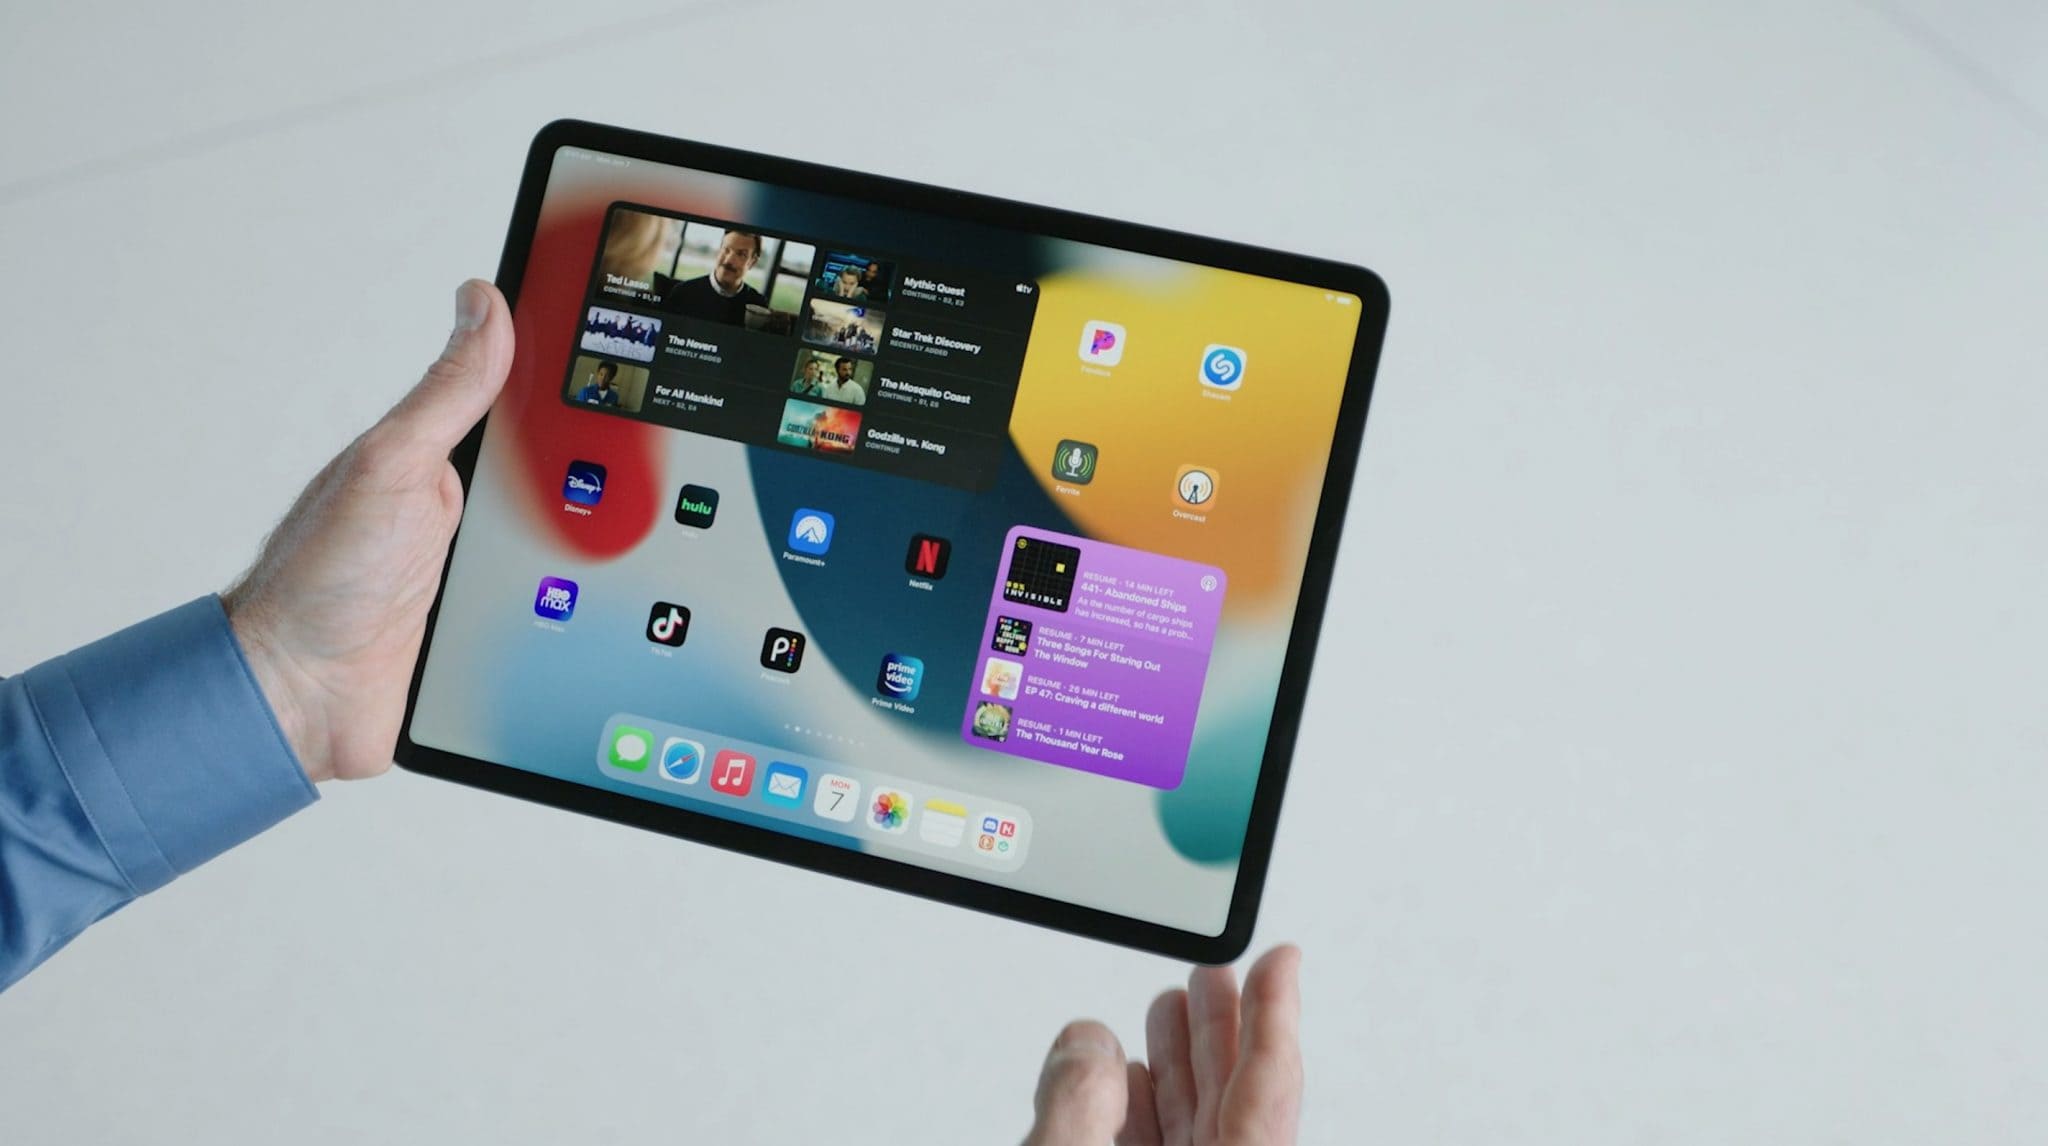 iPadOS 15 brings Home screen revamp, more powerful multitasking